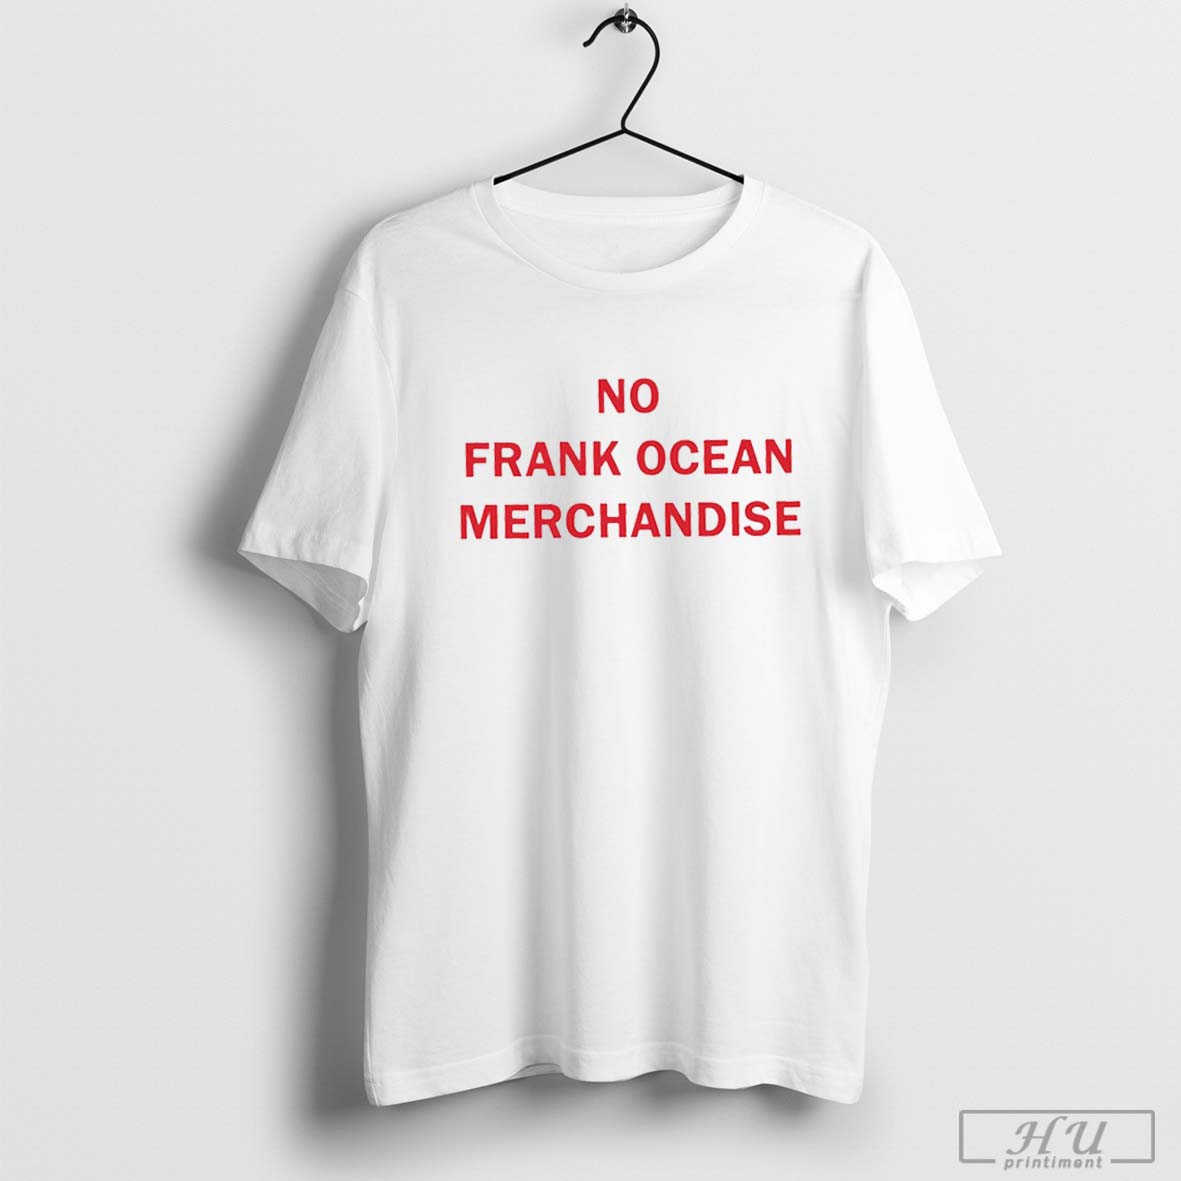 https://printiment.com/wp-content/uploads/2023/04/no-frank-ocean-merchandise-shirt.jpg